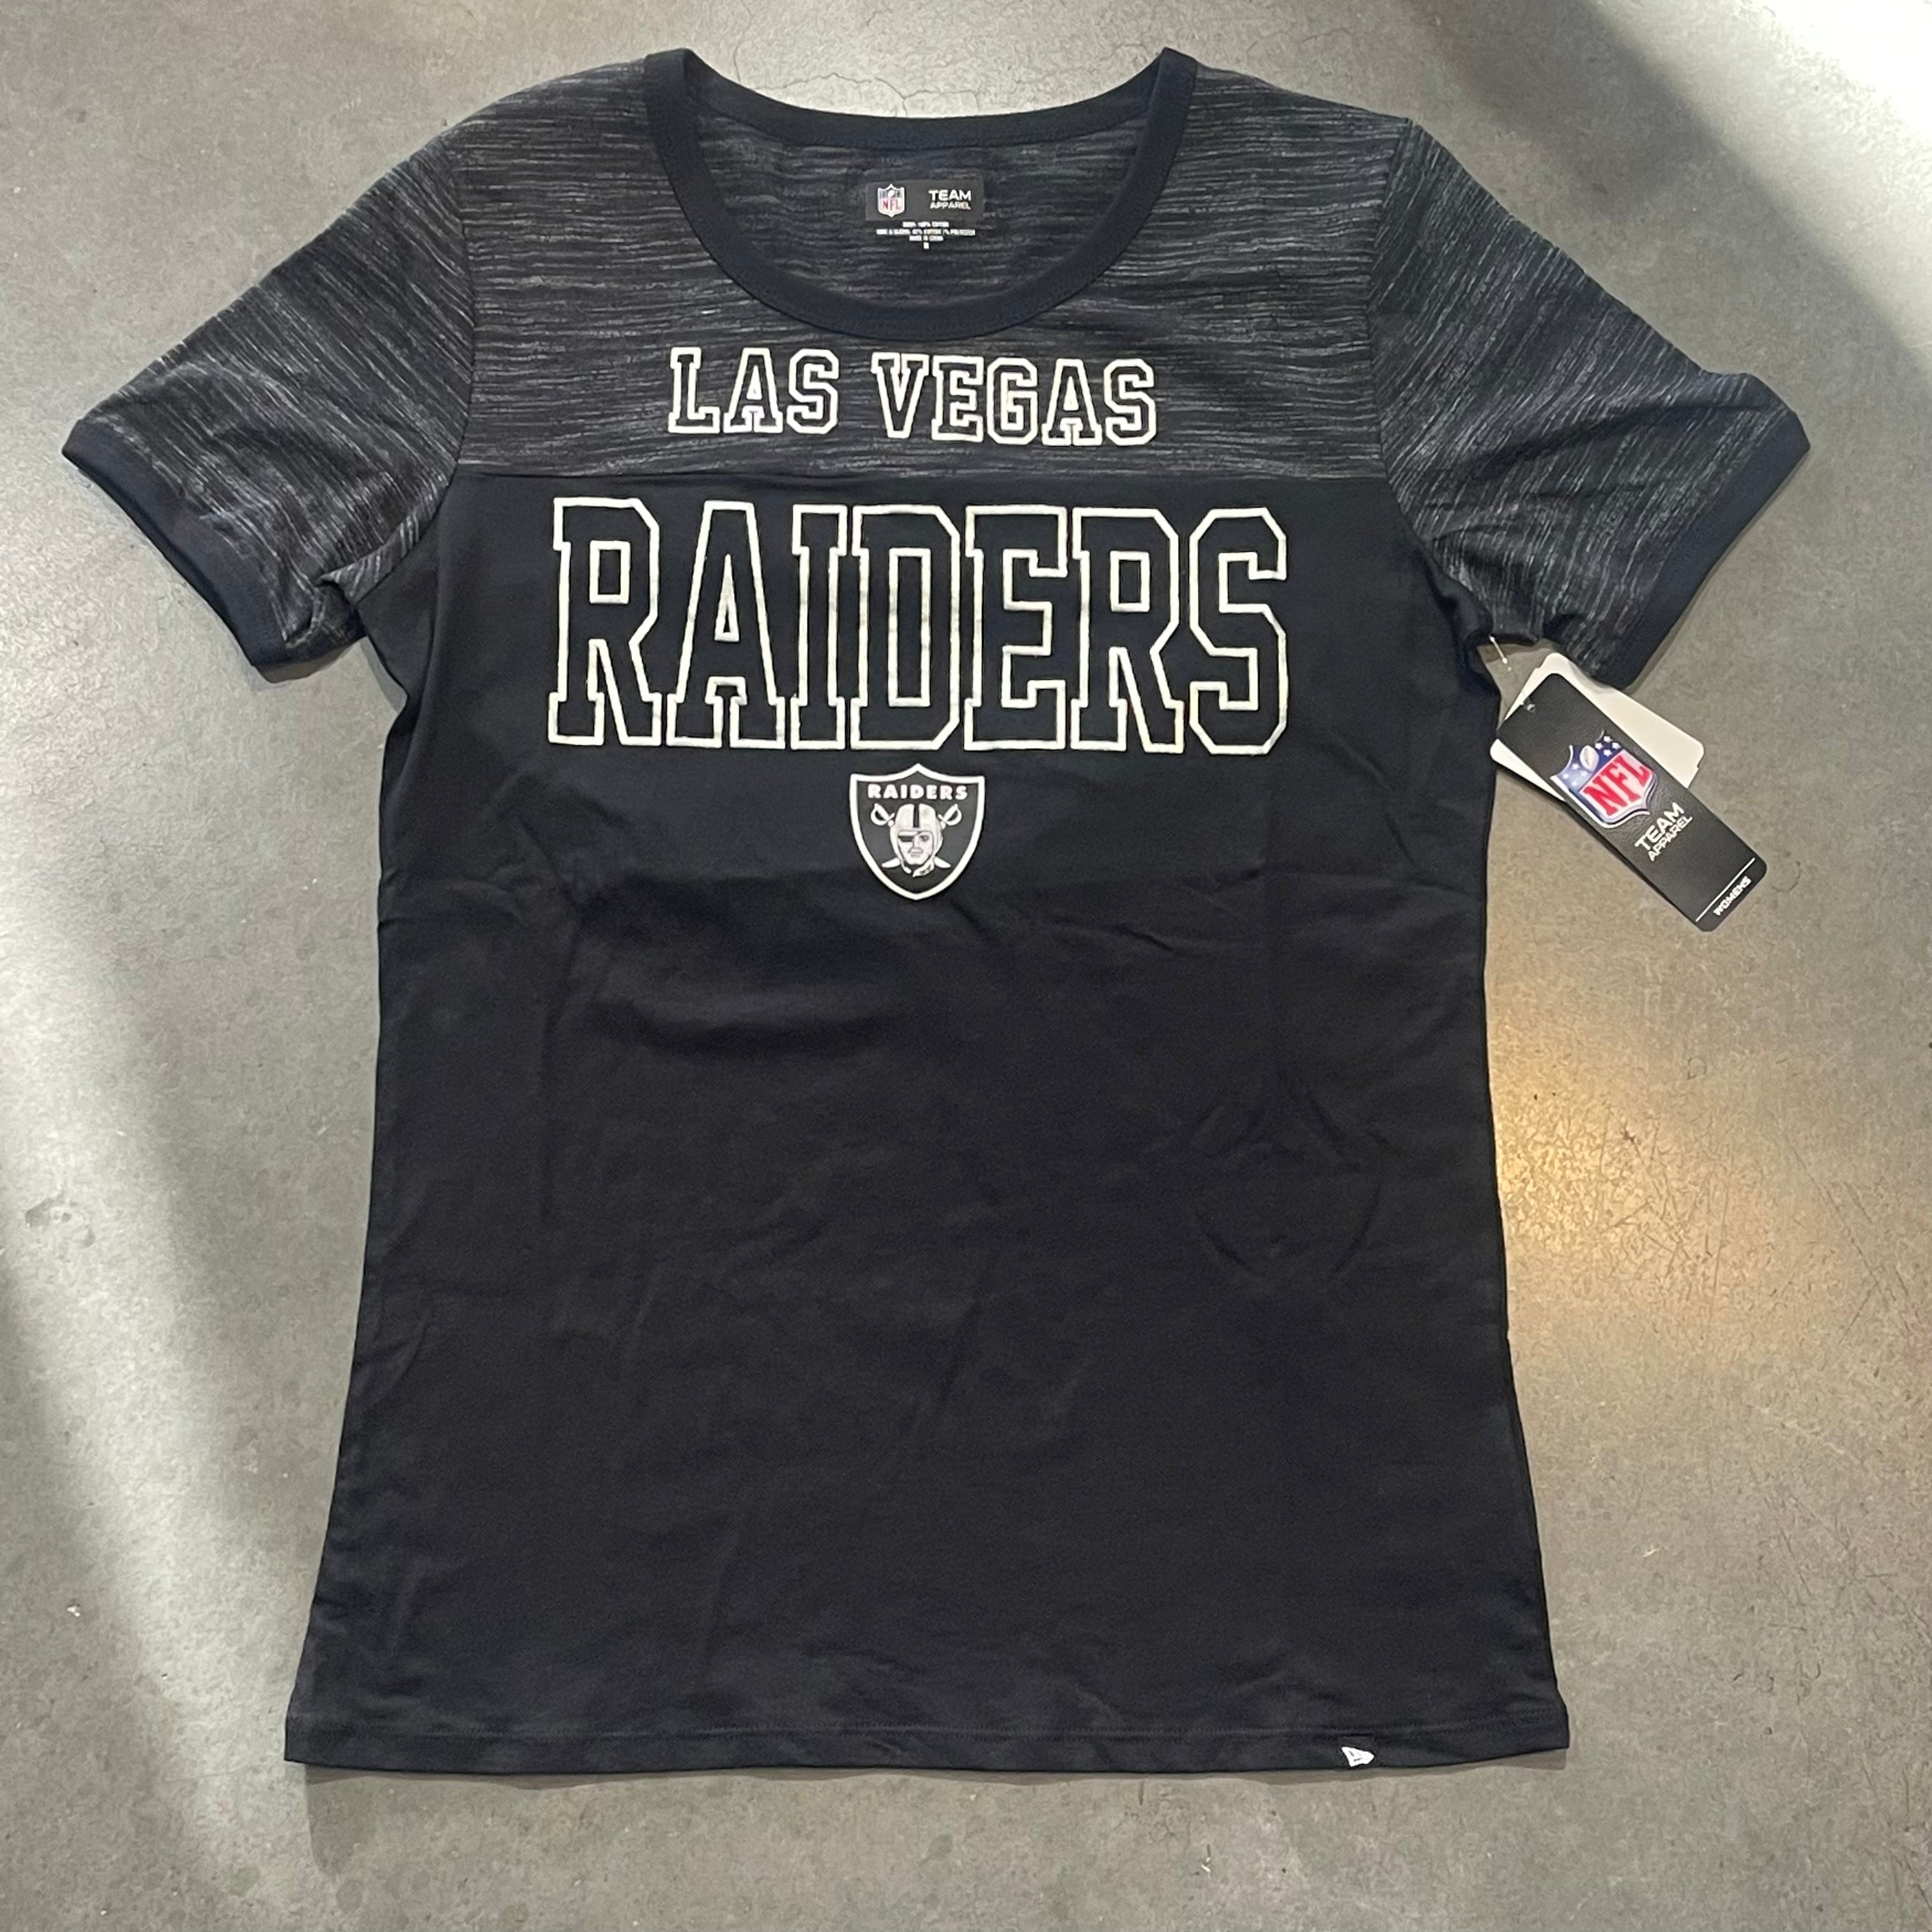 Las Vegas Raiders Merchandise, Las Vegas Raiders T-Shirts, Apparel